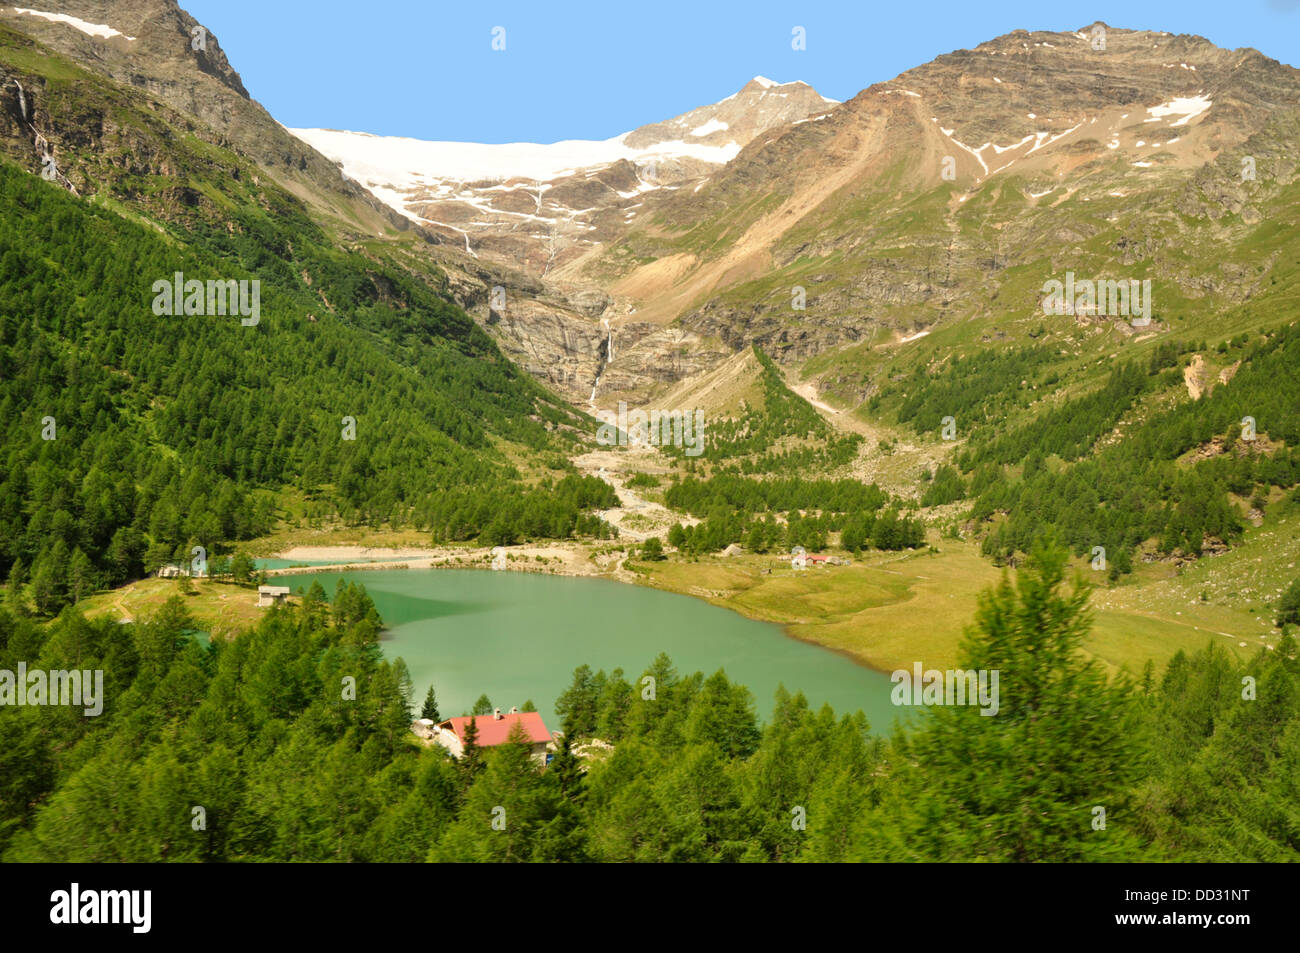 Suisse - Lago Bianco - de le train Bernina Express - montagne - Piz Bernina  + Piz Palu - soleil d'été Banque D'Images